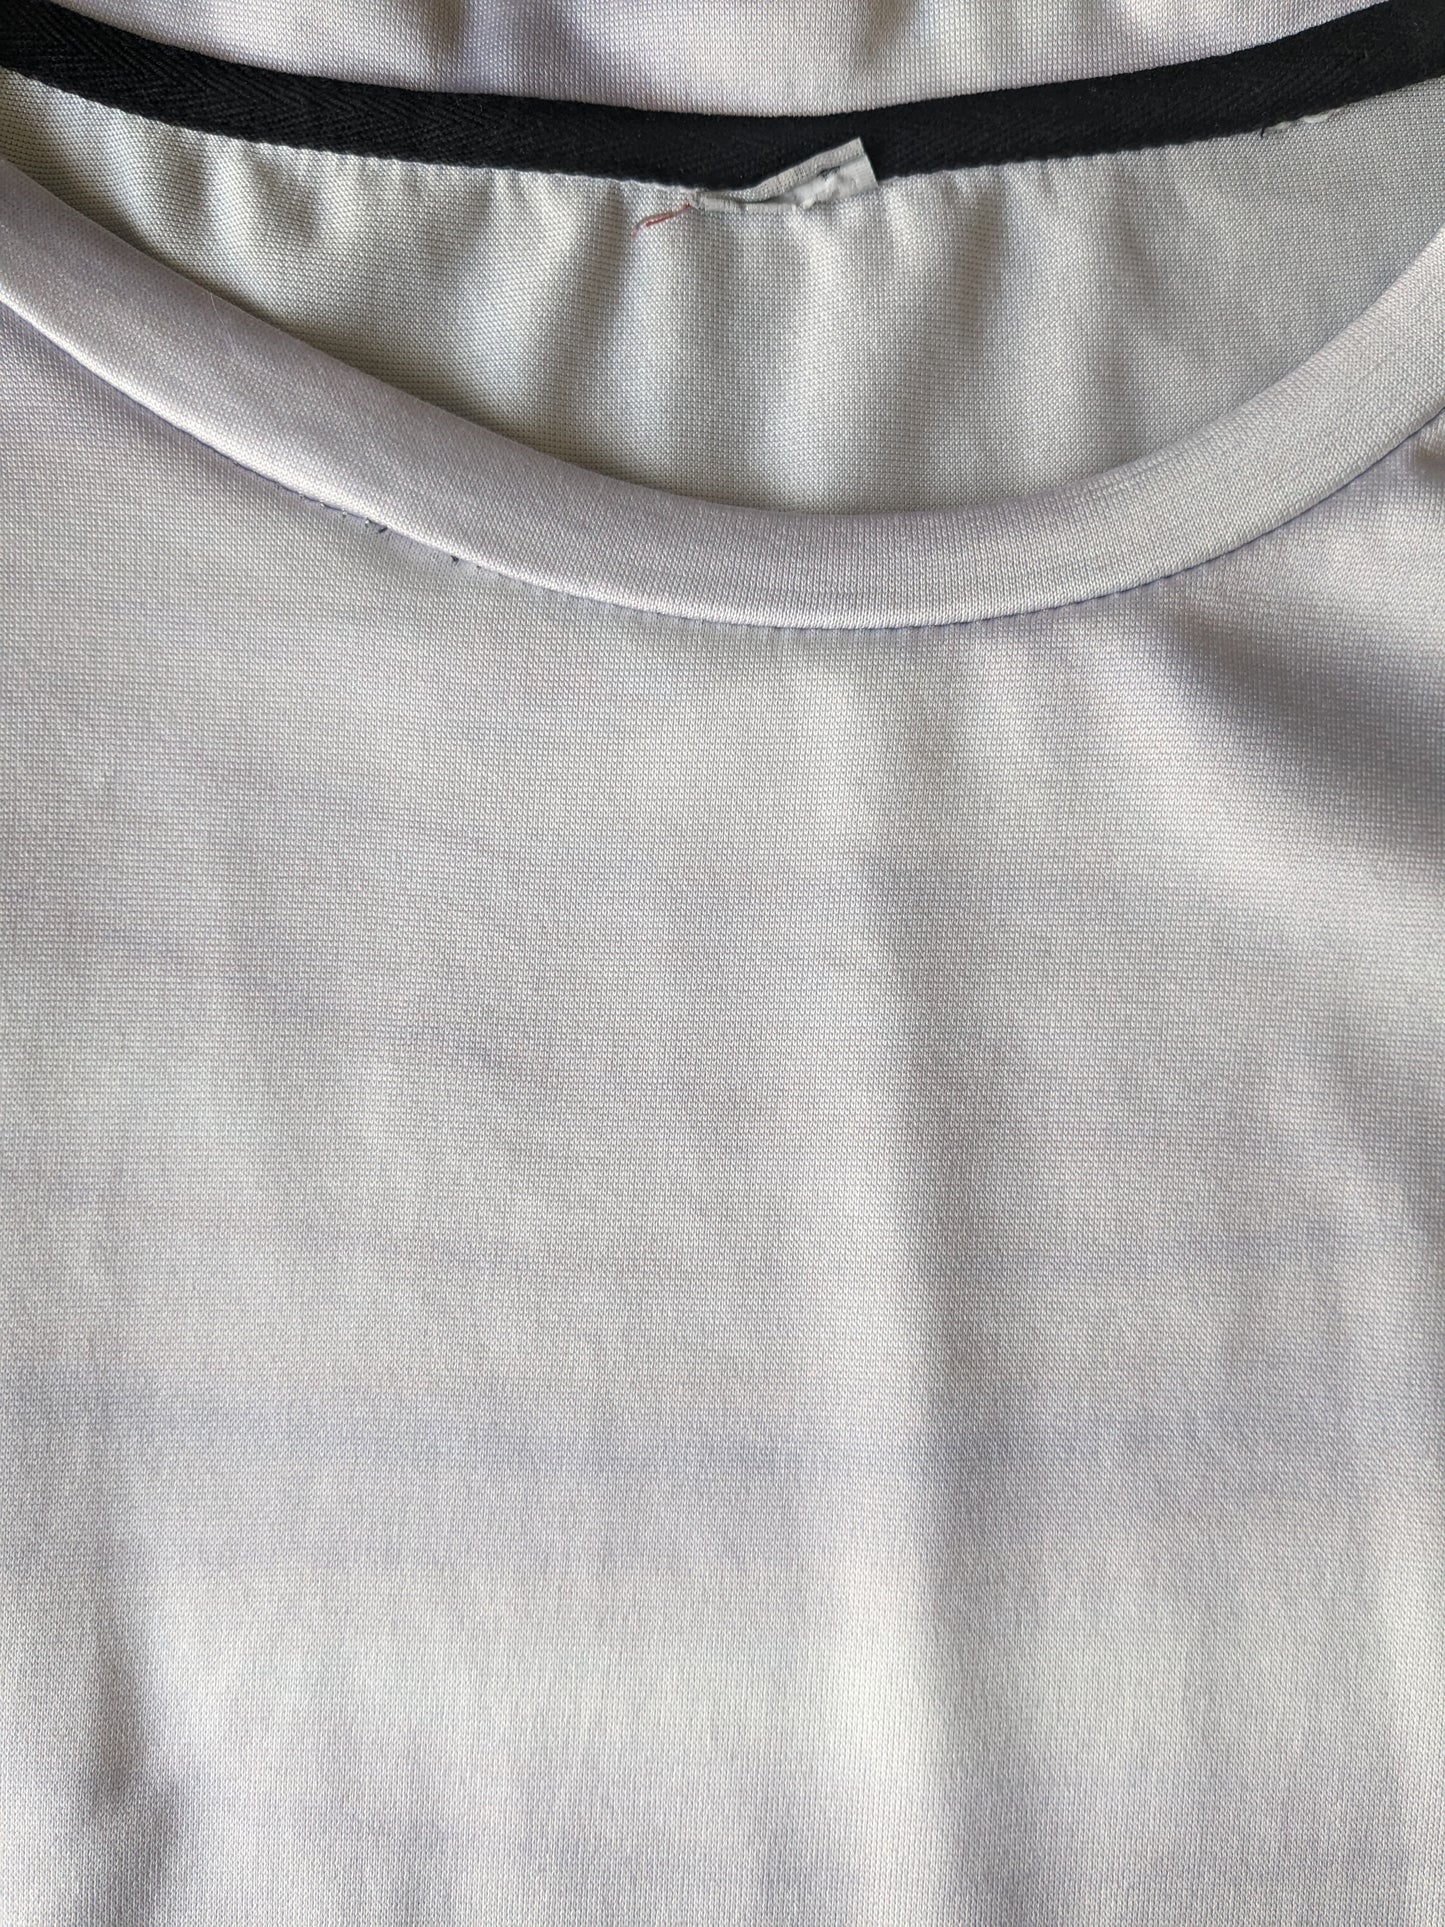 Dragonball Z print shirt. Purple white colored. Size M.